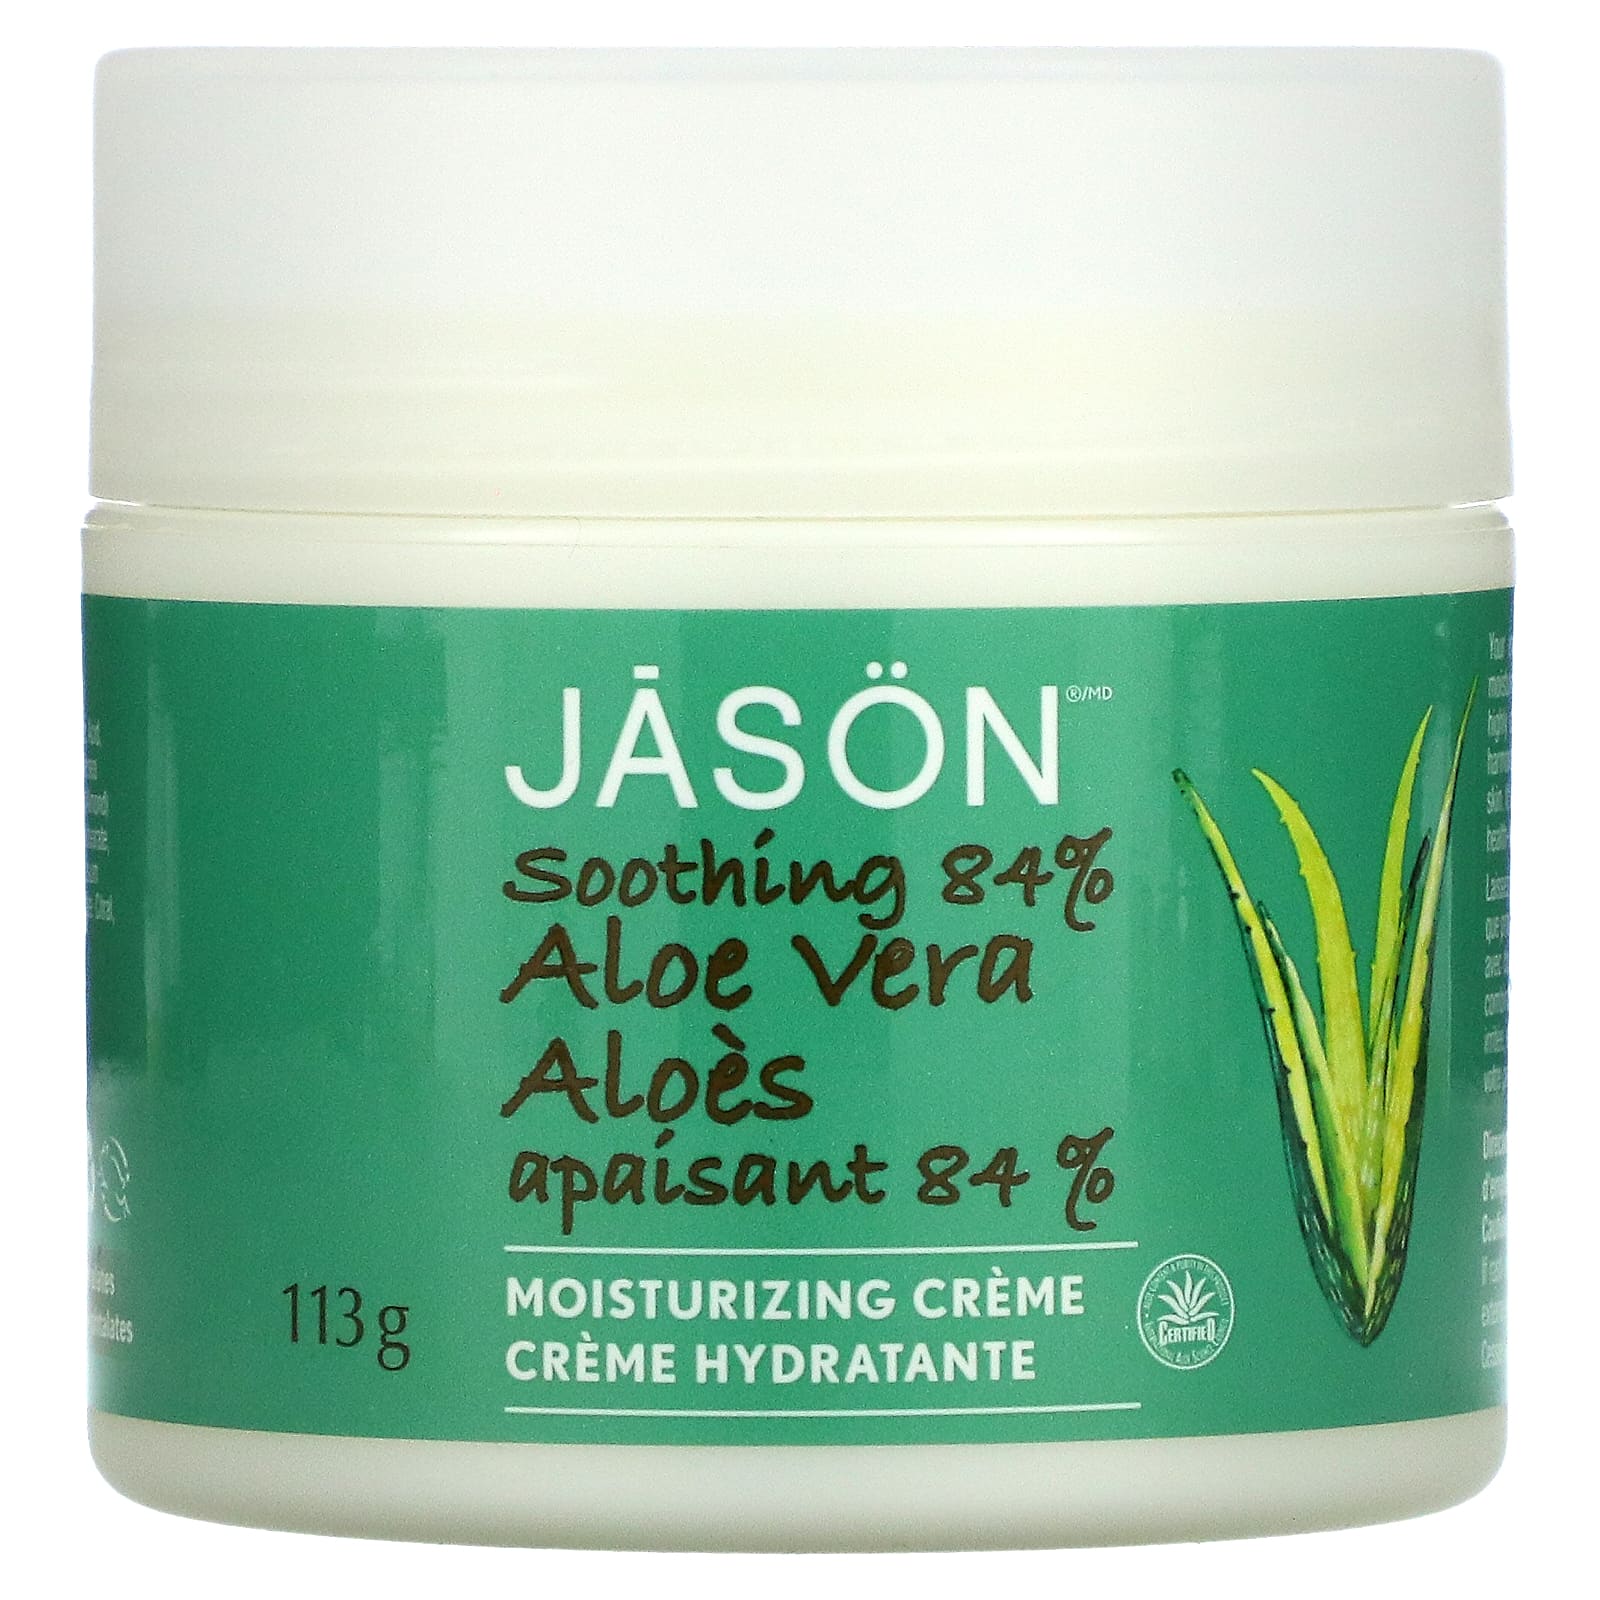 Jason Natural Aloe Vera 84% Moisturizing Creme Soothing 4 oz (113 g) jason natural soothing 98% aloe vera moisturizing gel 4 oz 113 g